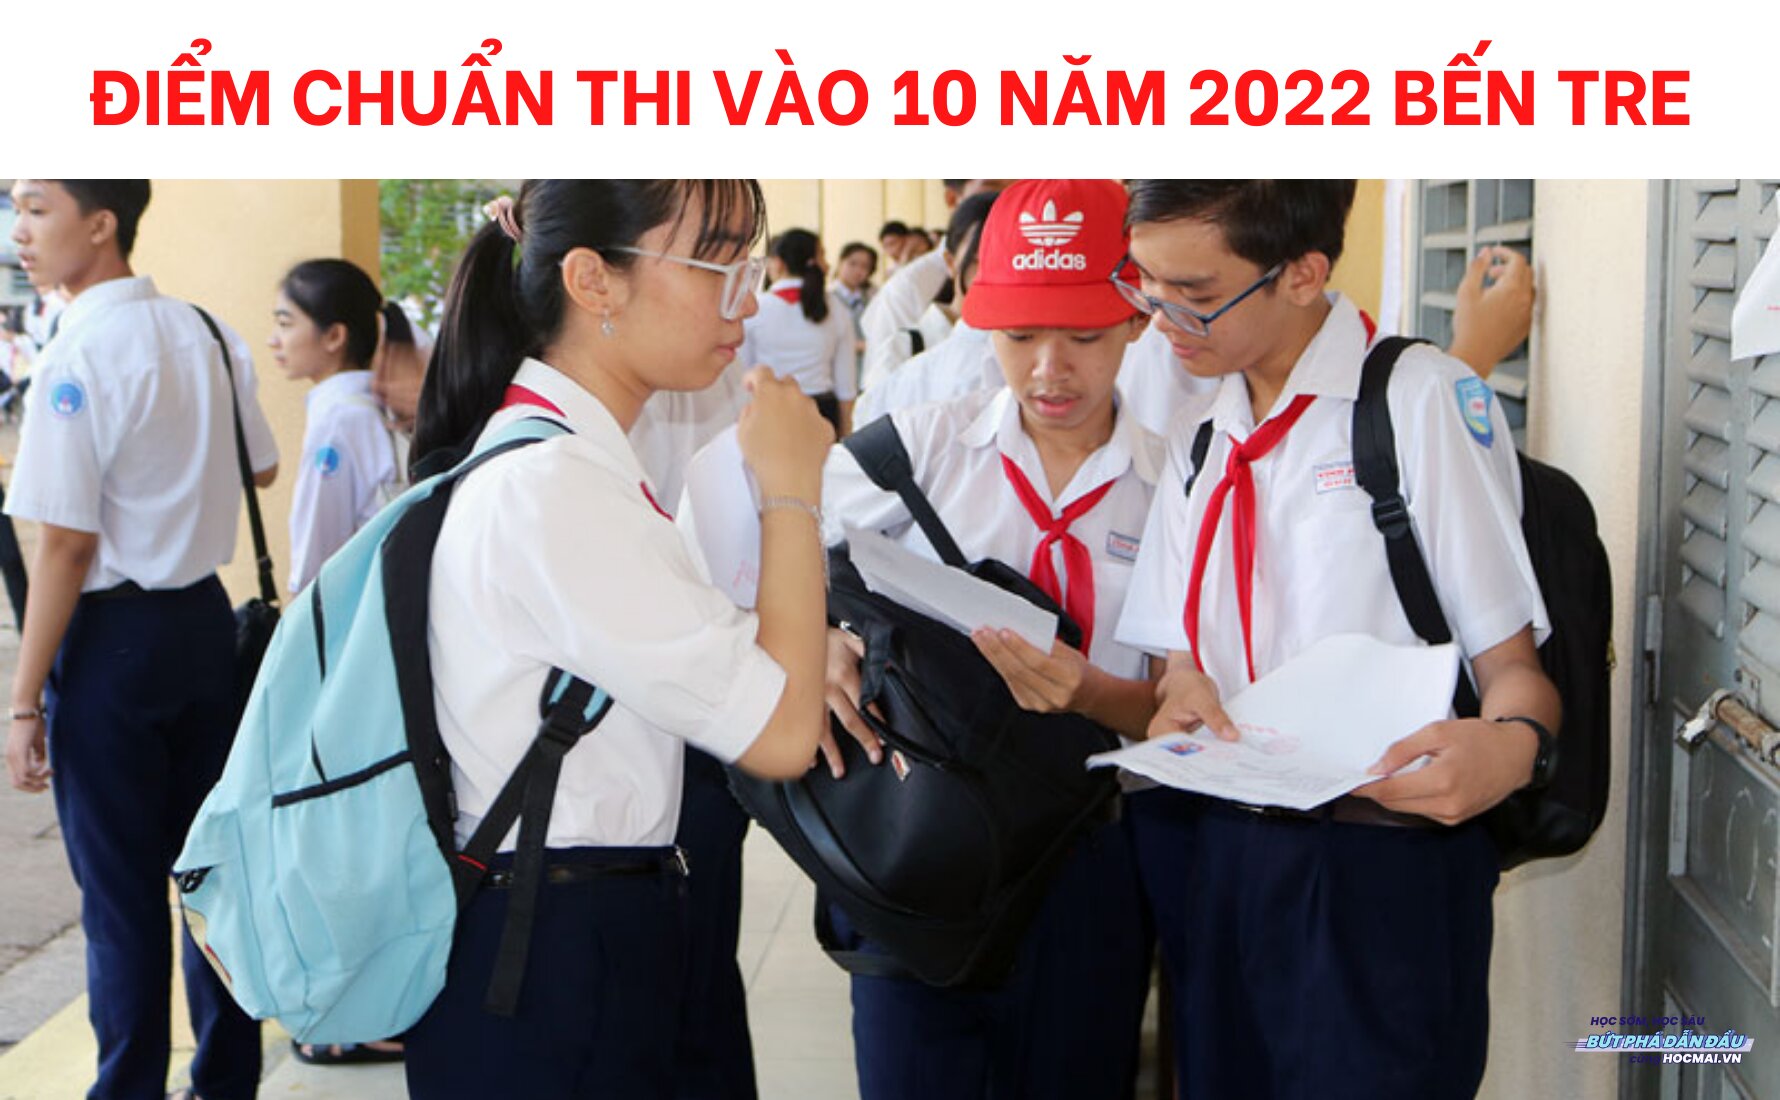 Điểm chuẩn thi vào 10 năm 2022 Bến Tre - HOCMAI